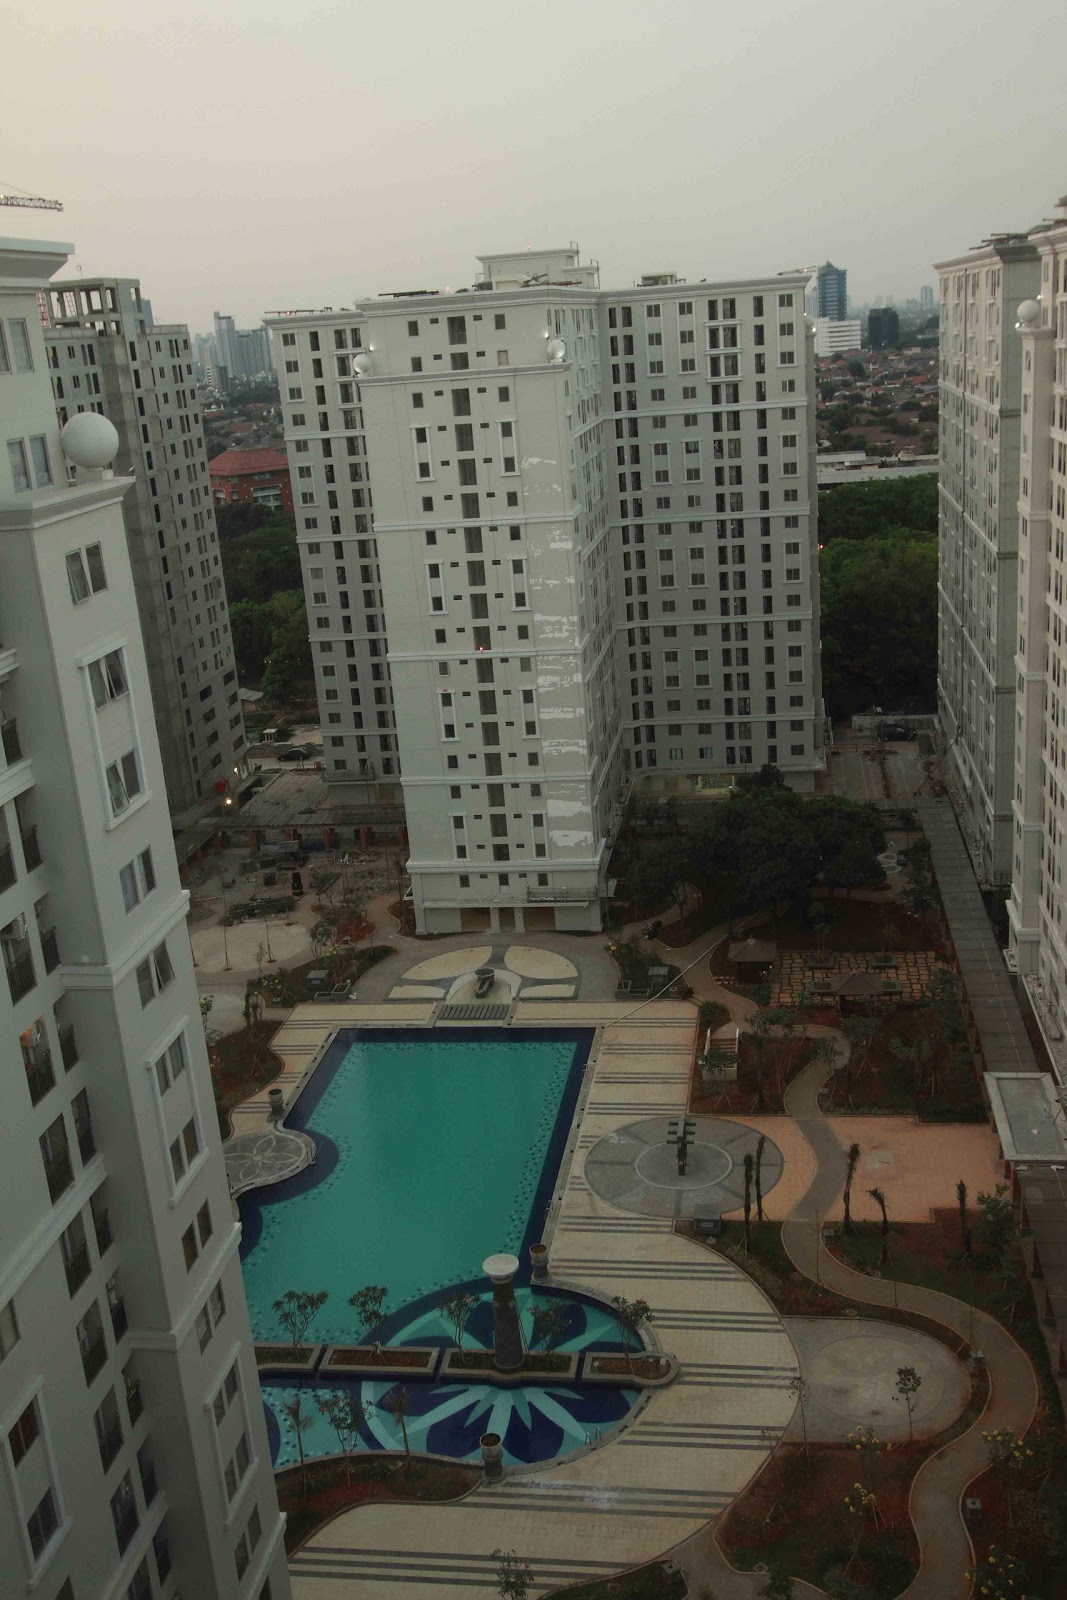 Sewa Apartemen Jakarta: Sewa Apartment Green Palace